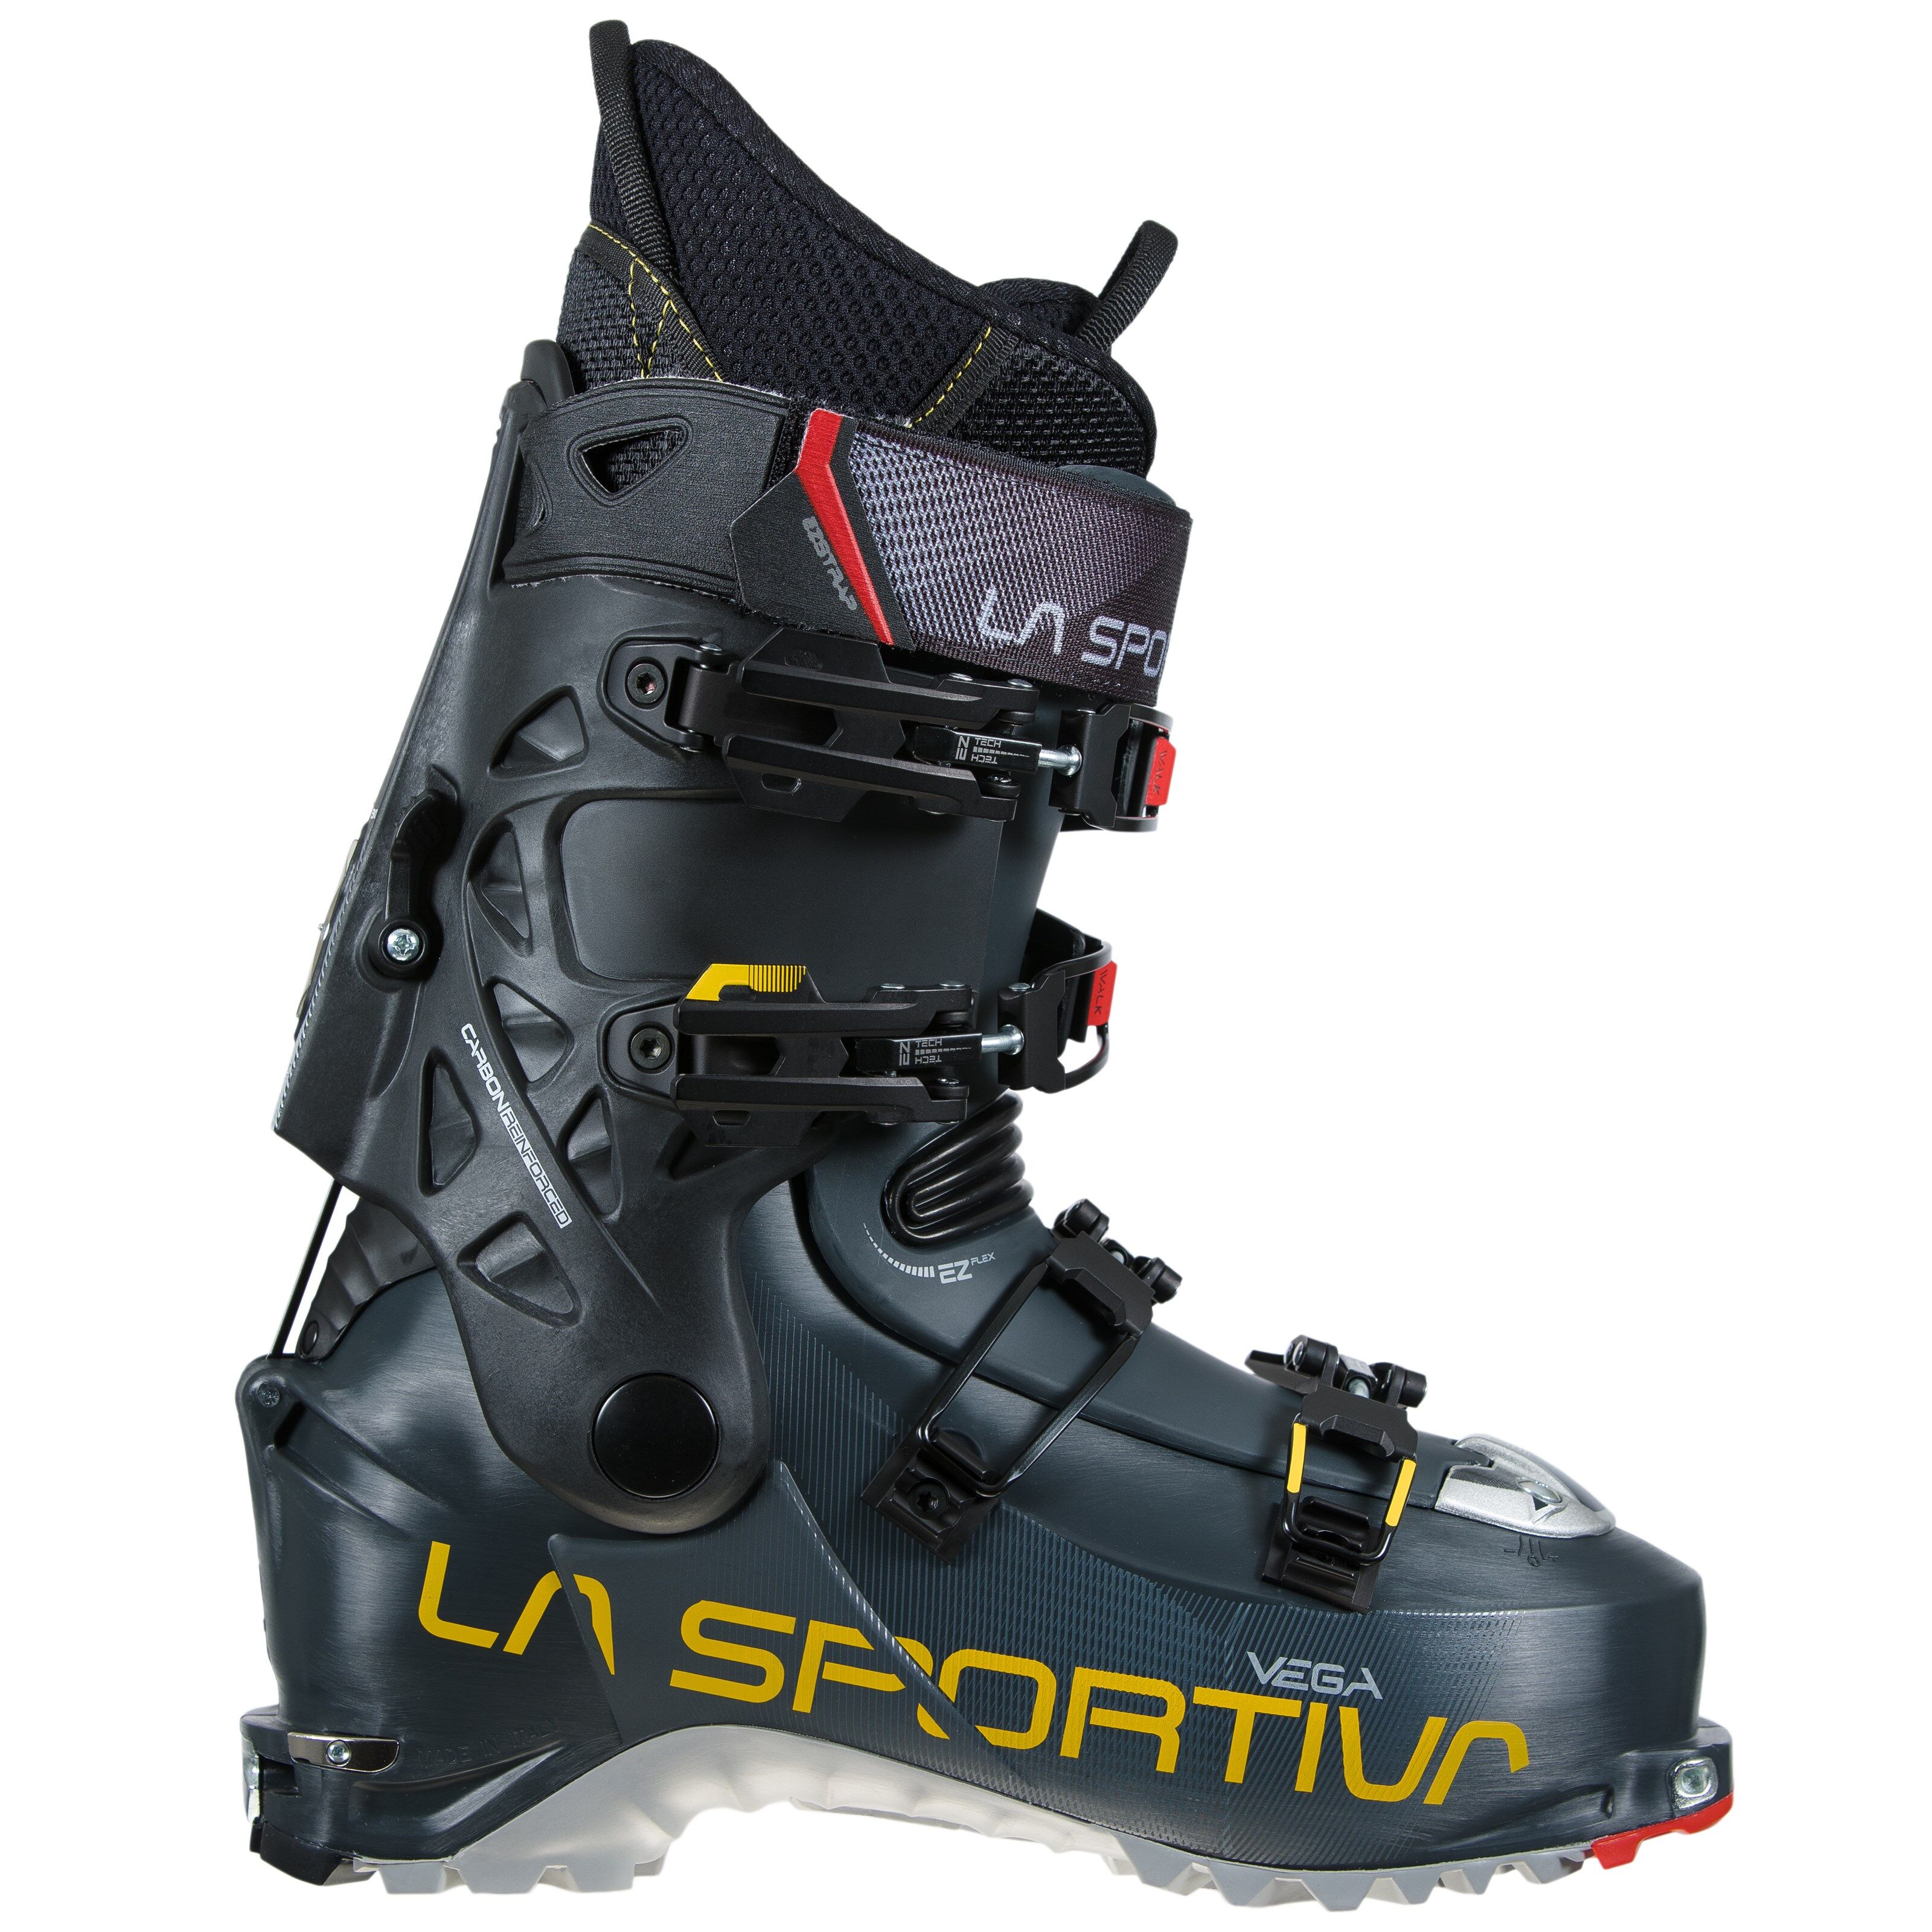 La Sportiva Vega toppturstøvler, herre 21/22 Carbon/Yellow 31,5 2020